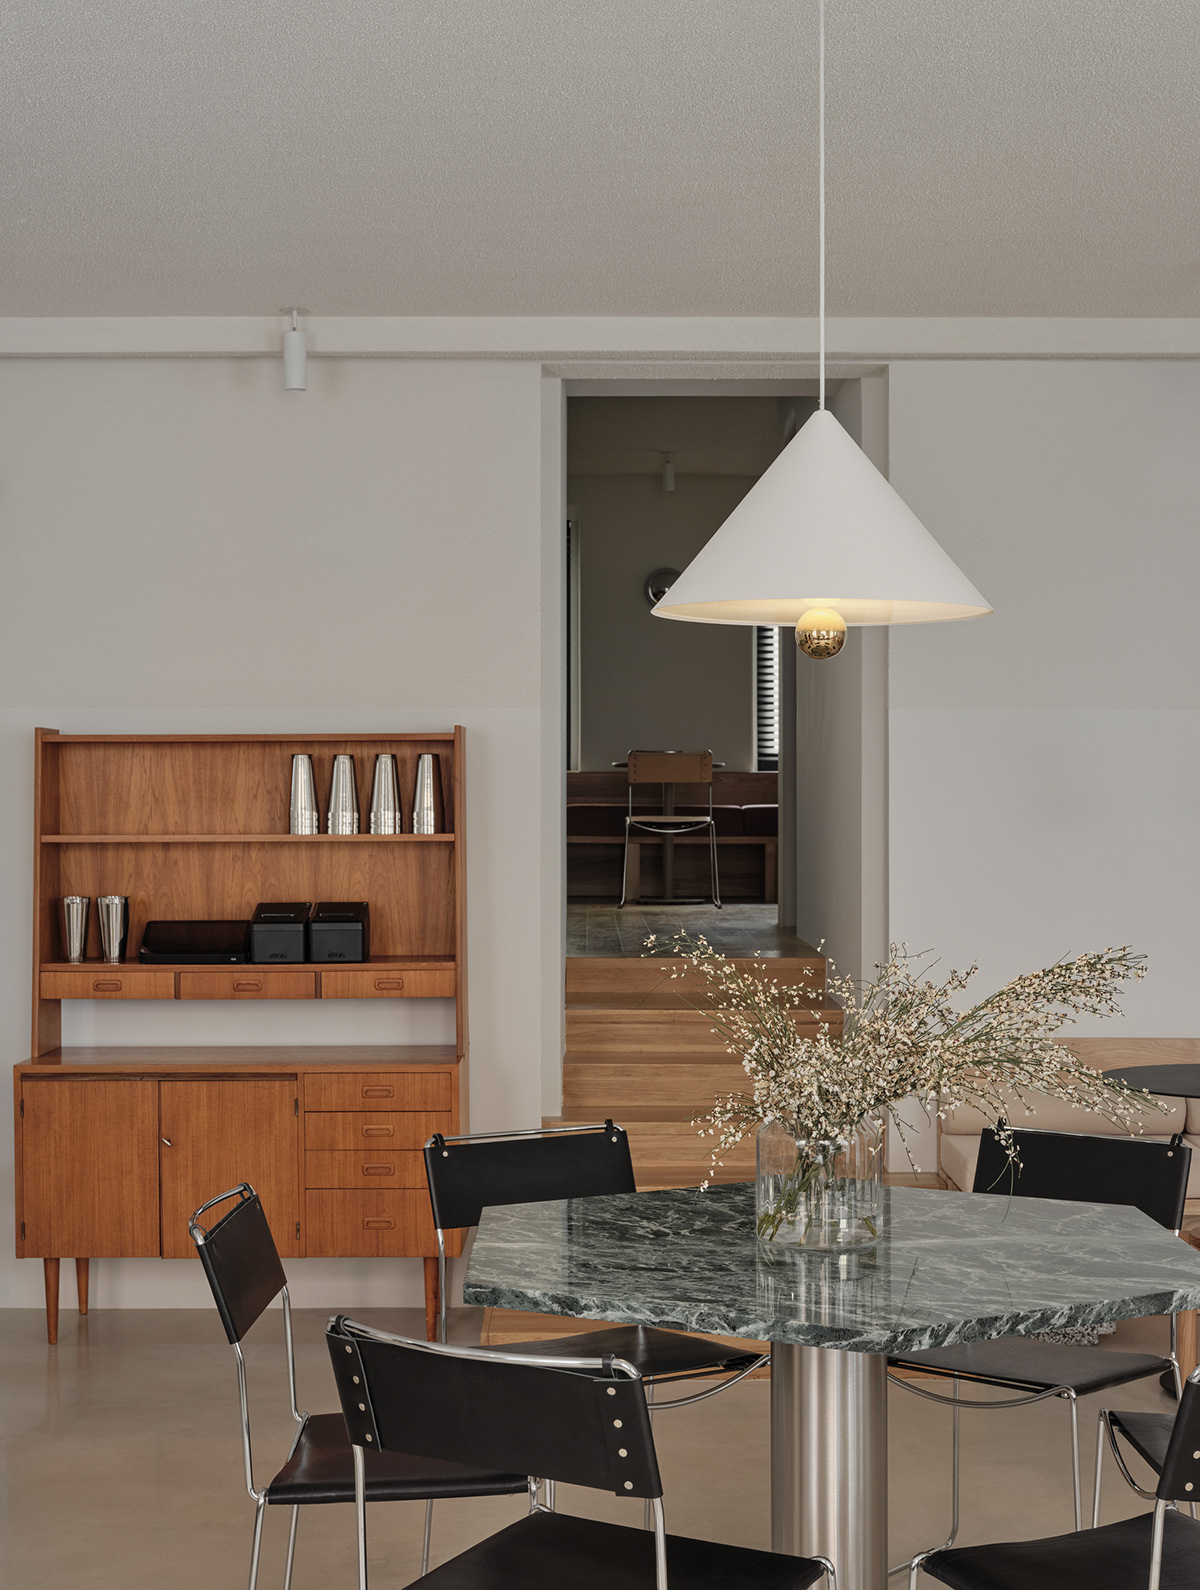 architecture Coffee House design Interior minimalistic public